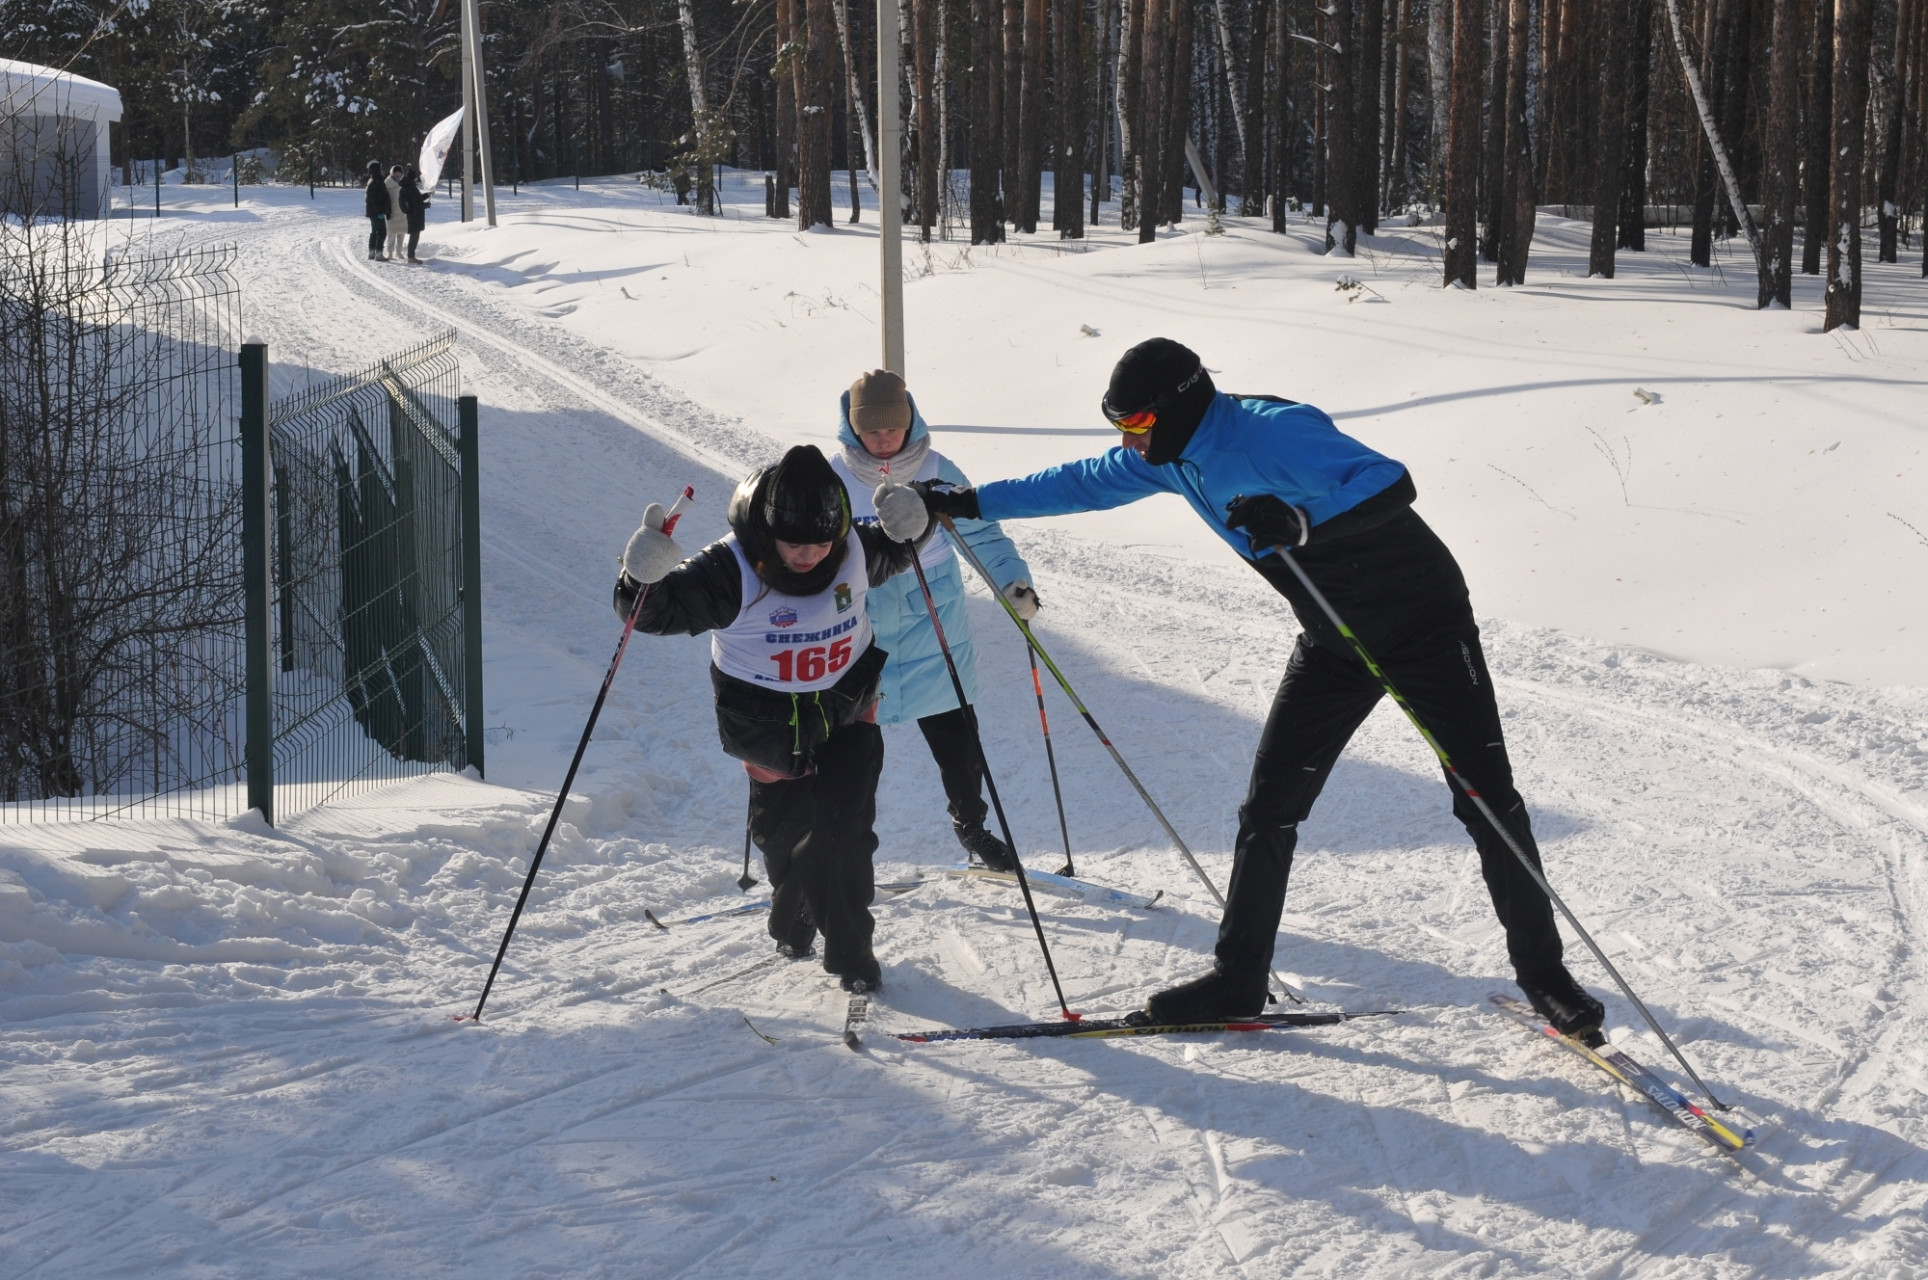 На самом крутом подъеме трассы профессиональный лыжник, не участвующий в забегах, помогает малоопытной молодежи. Похвально.